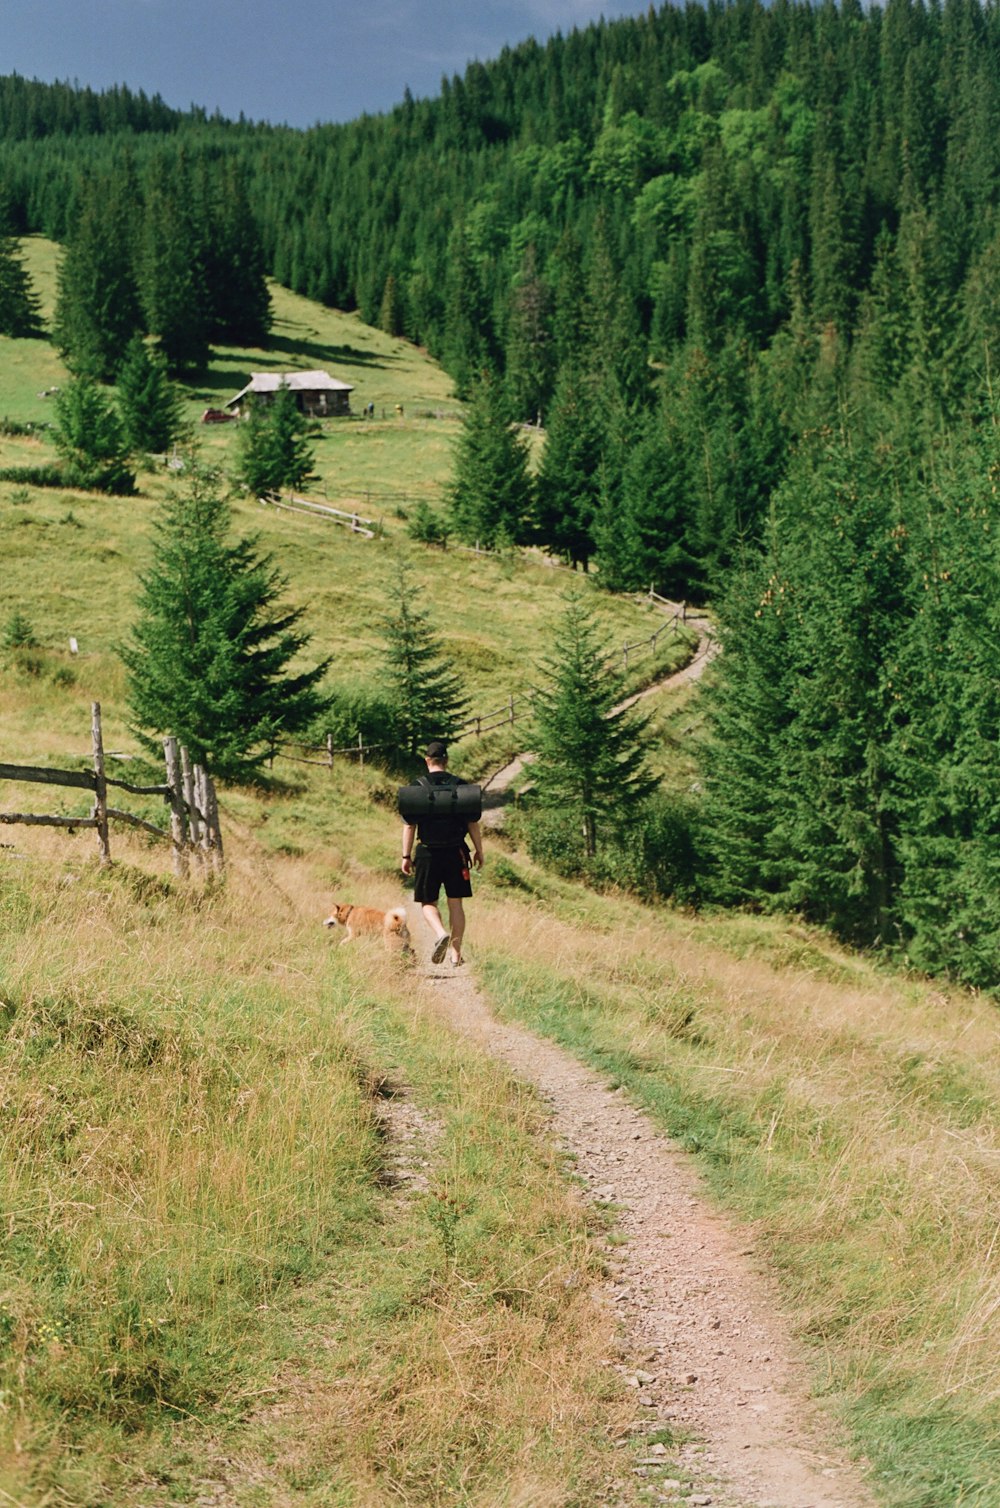 a man walking a dog down a dirt road